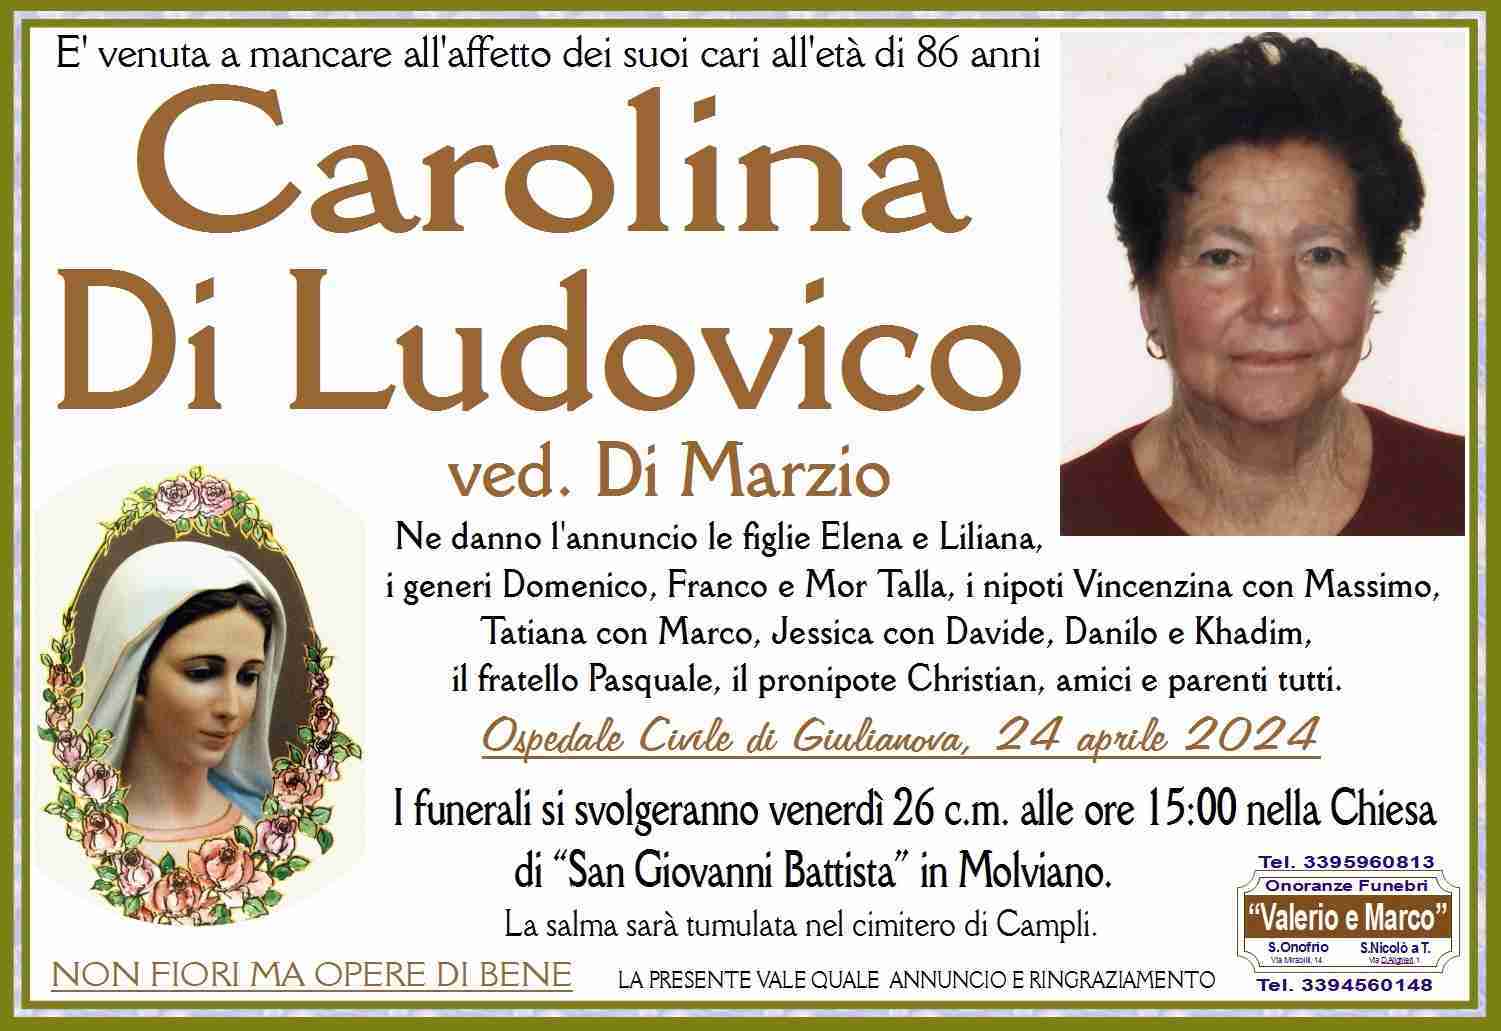 Carolina Di Ludovico